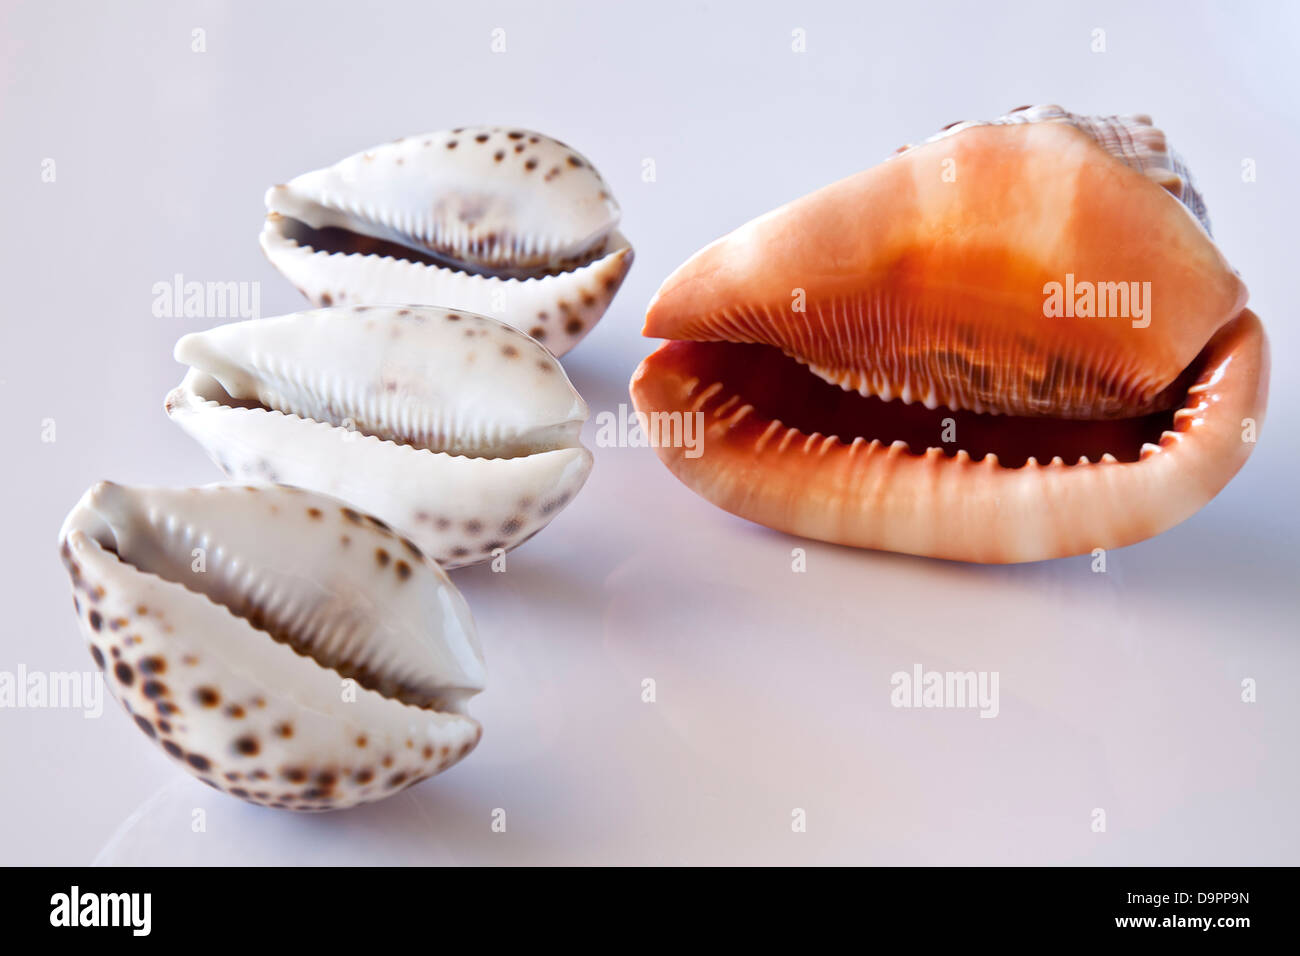 Four seashells. Stock Photo